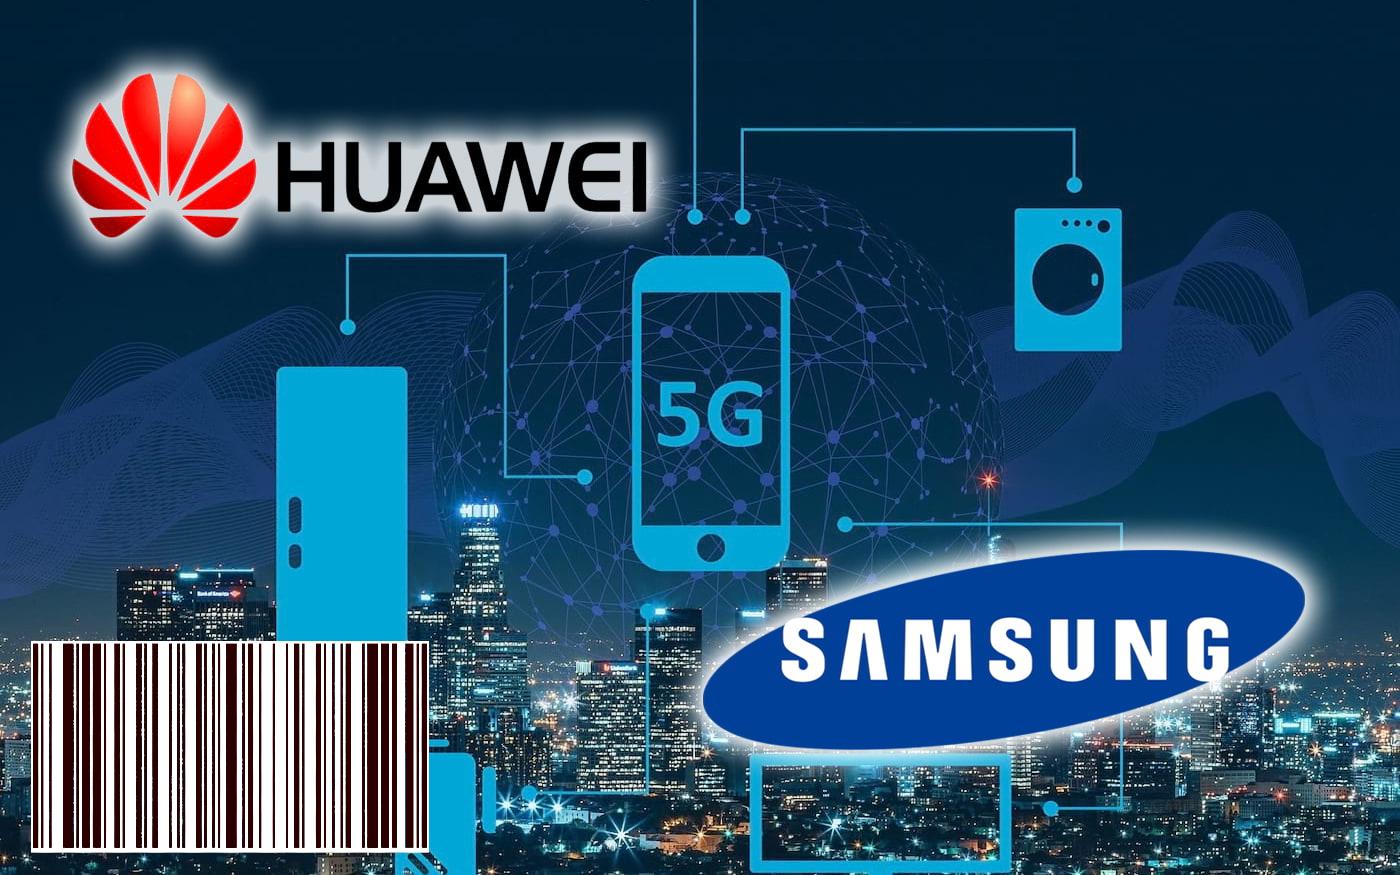 قد تتفوق Huawei على Samsung في السوق للهواتف الذكية 5G المصنعة في جميع أنحاء العالم في عام 2020